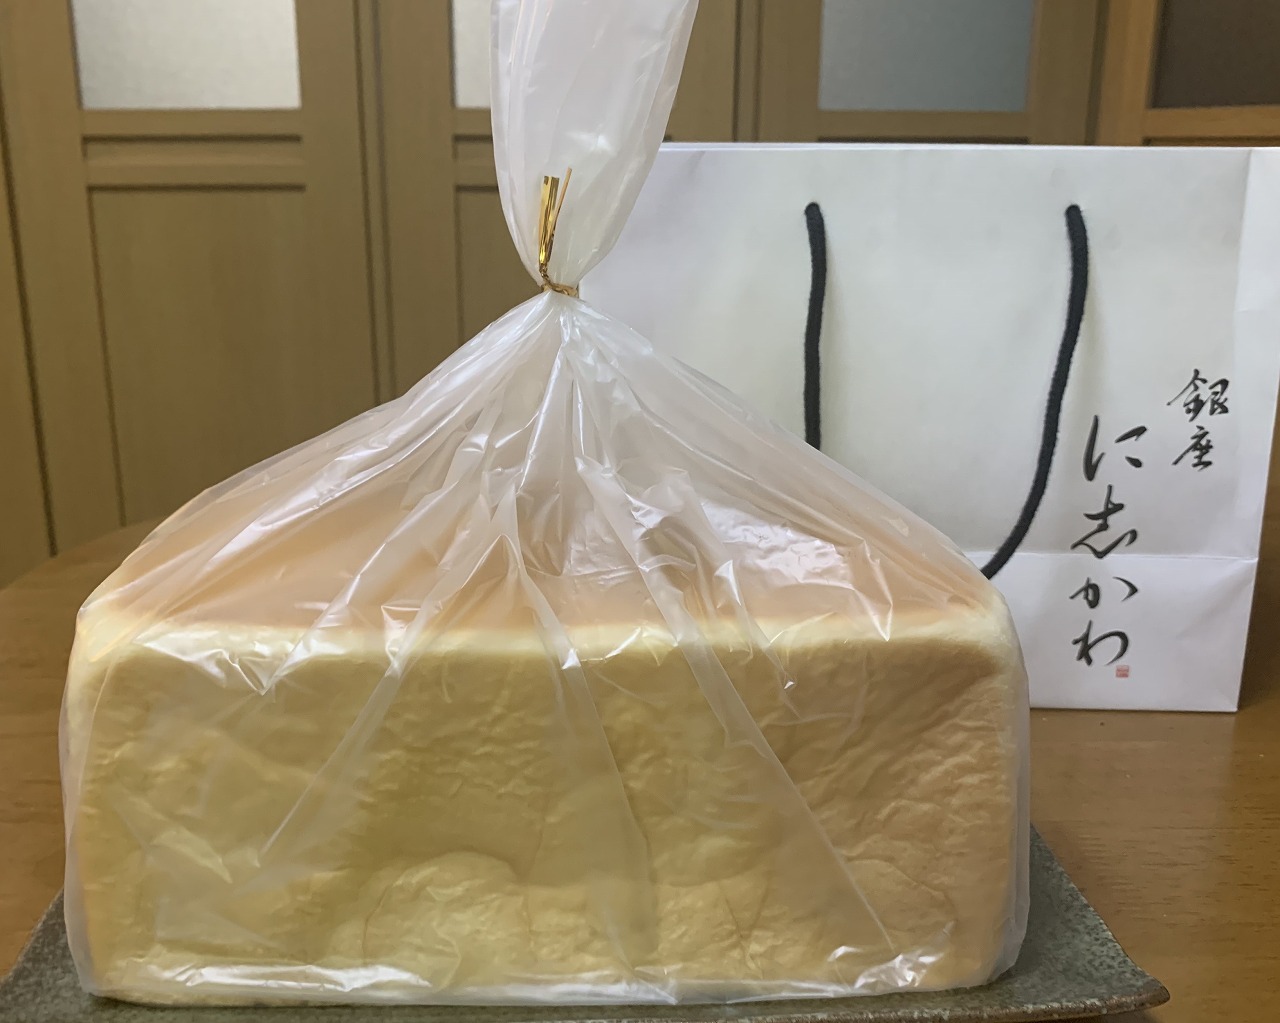 食パン専門店「銀座に志かわ 神戸六甲道店」